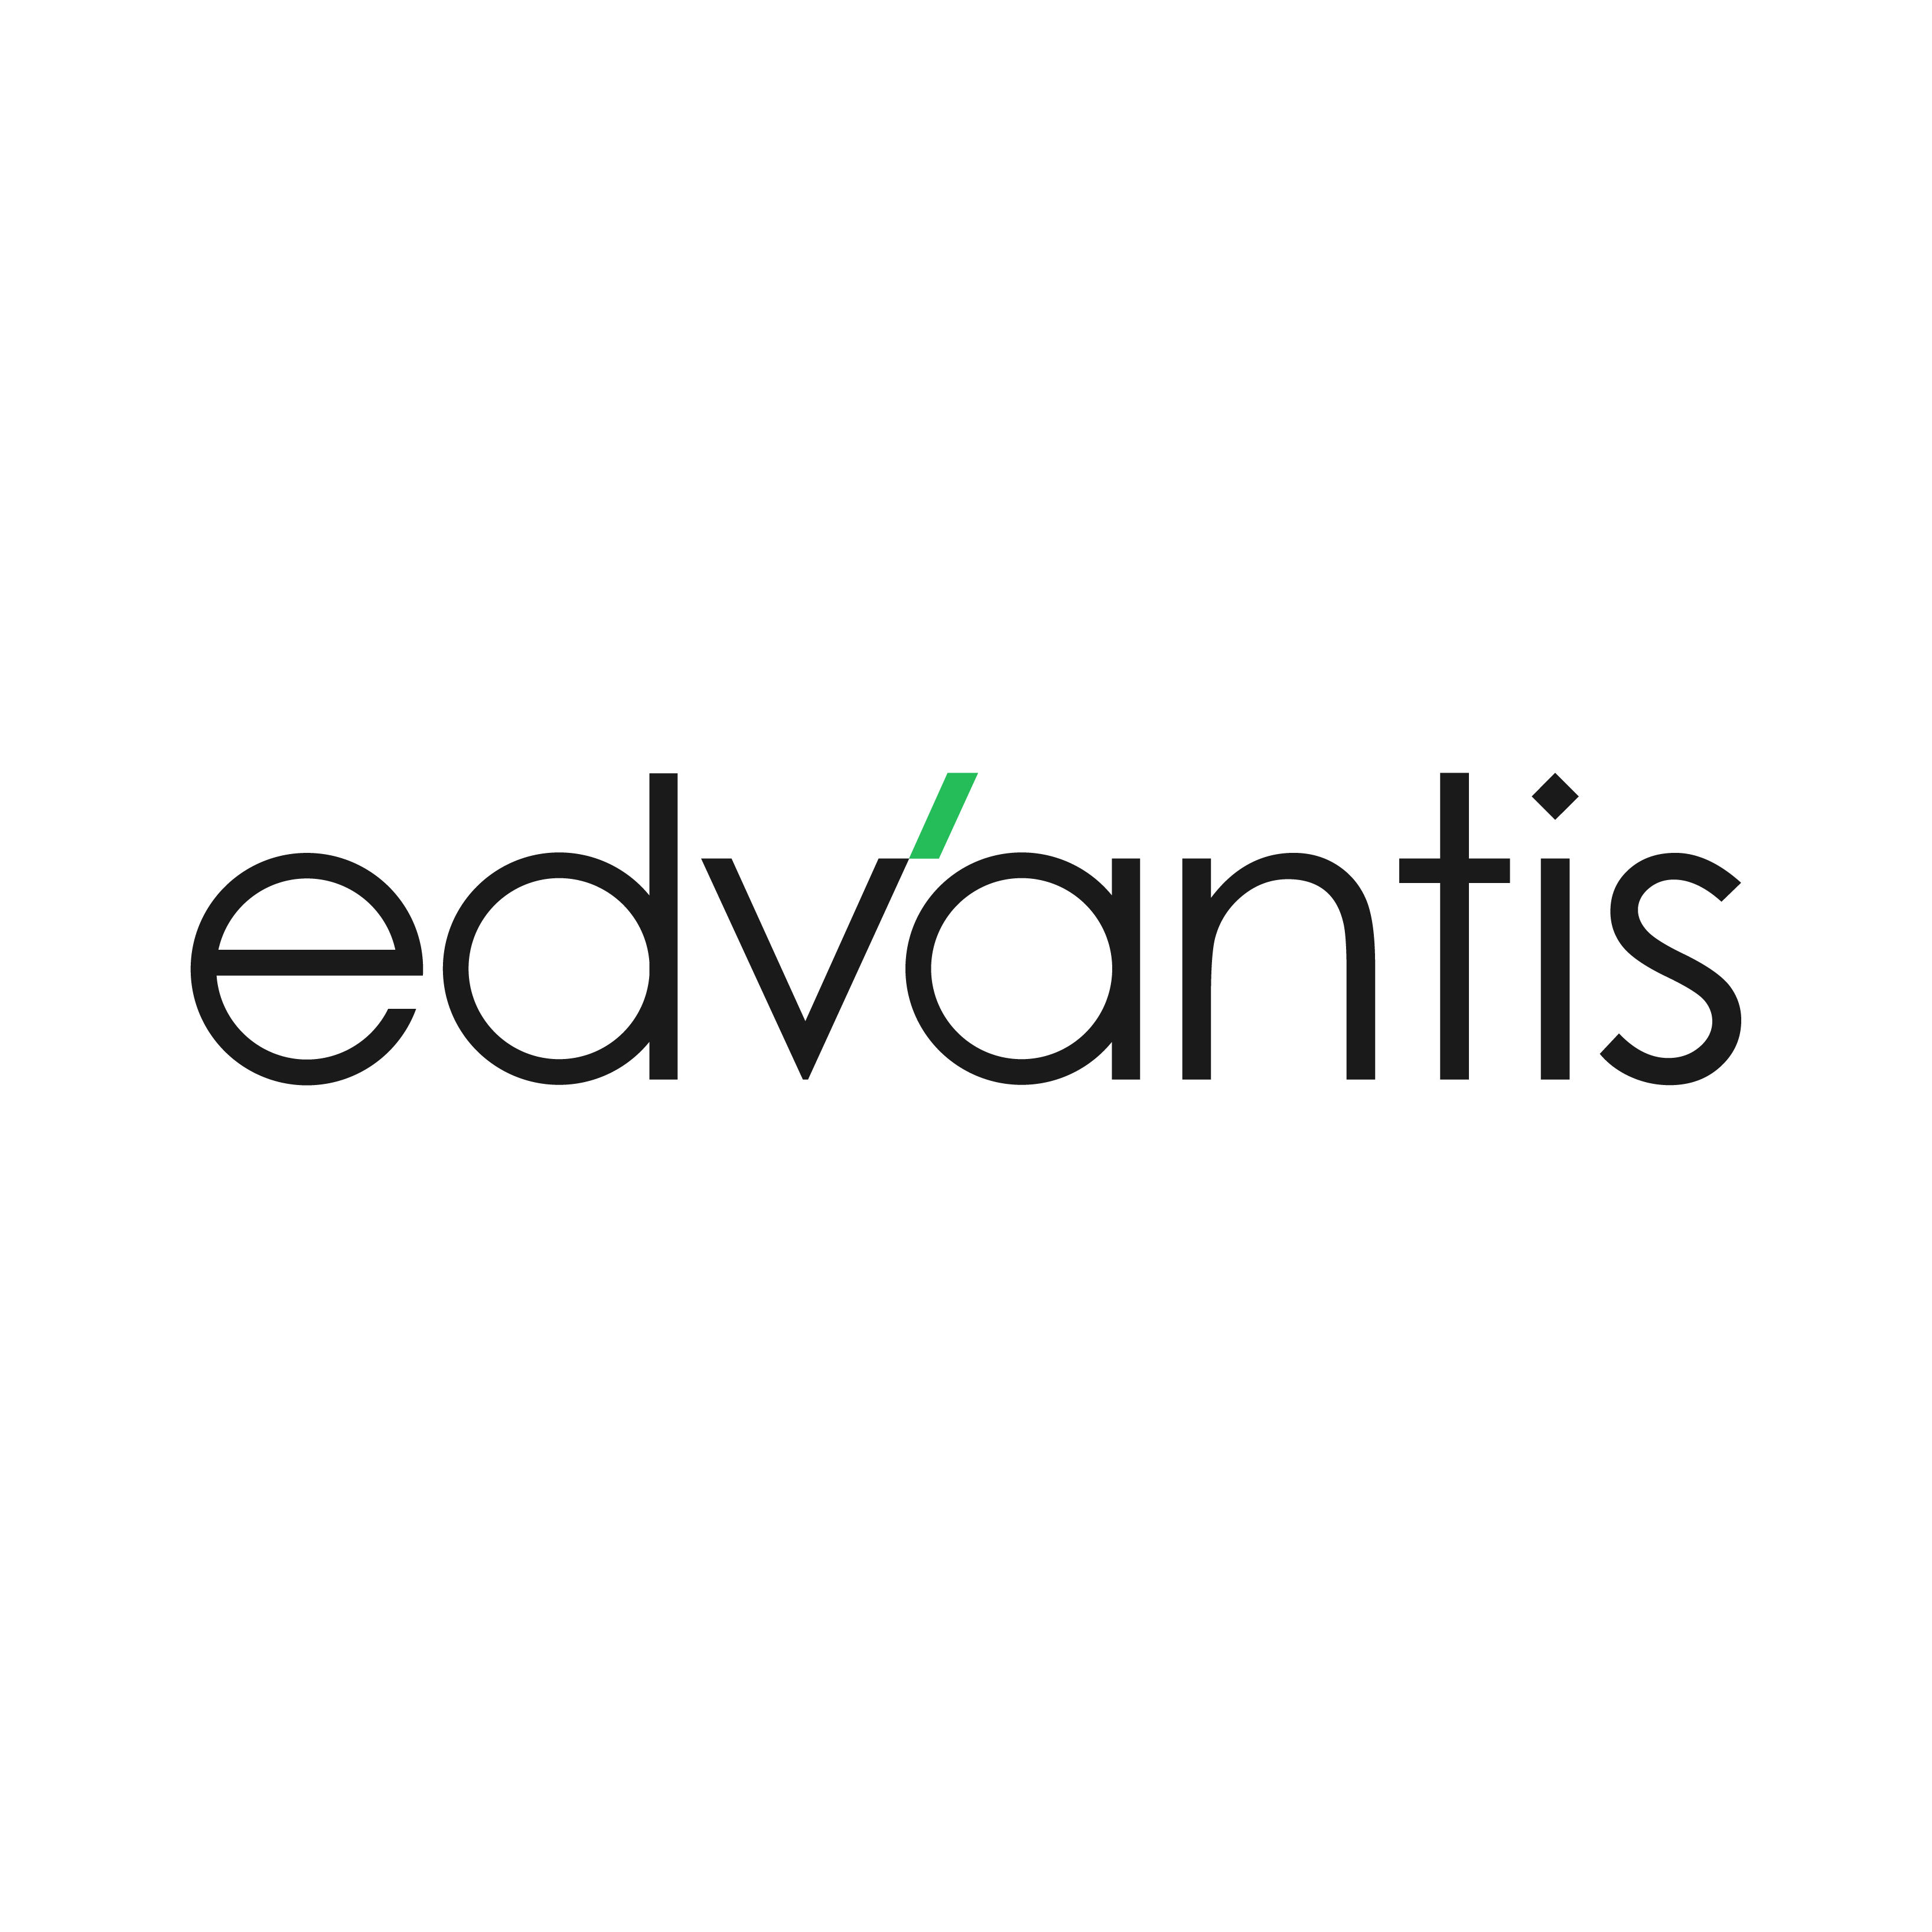 edvantis logo 785x785 on white.png